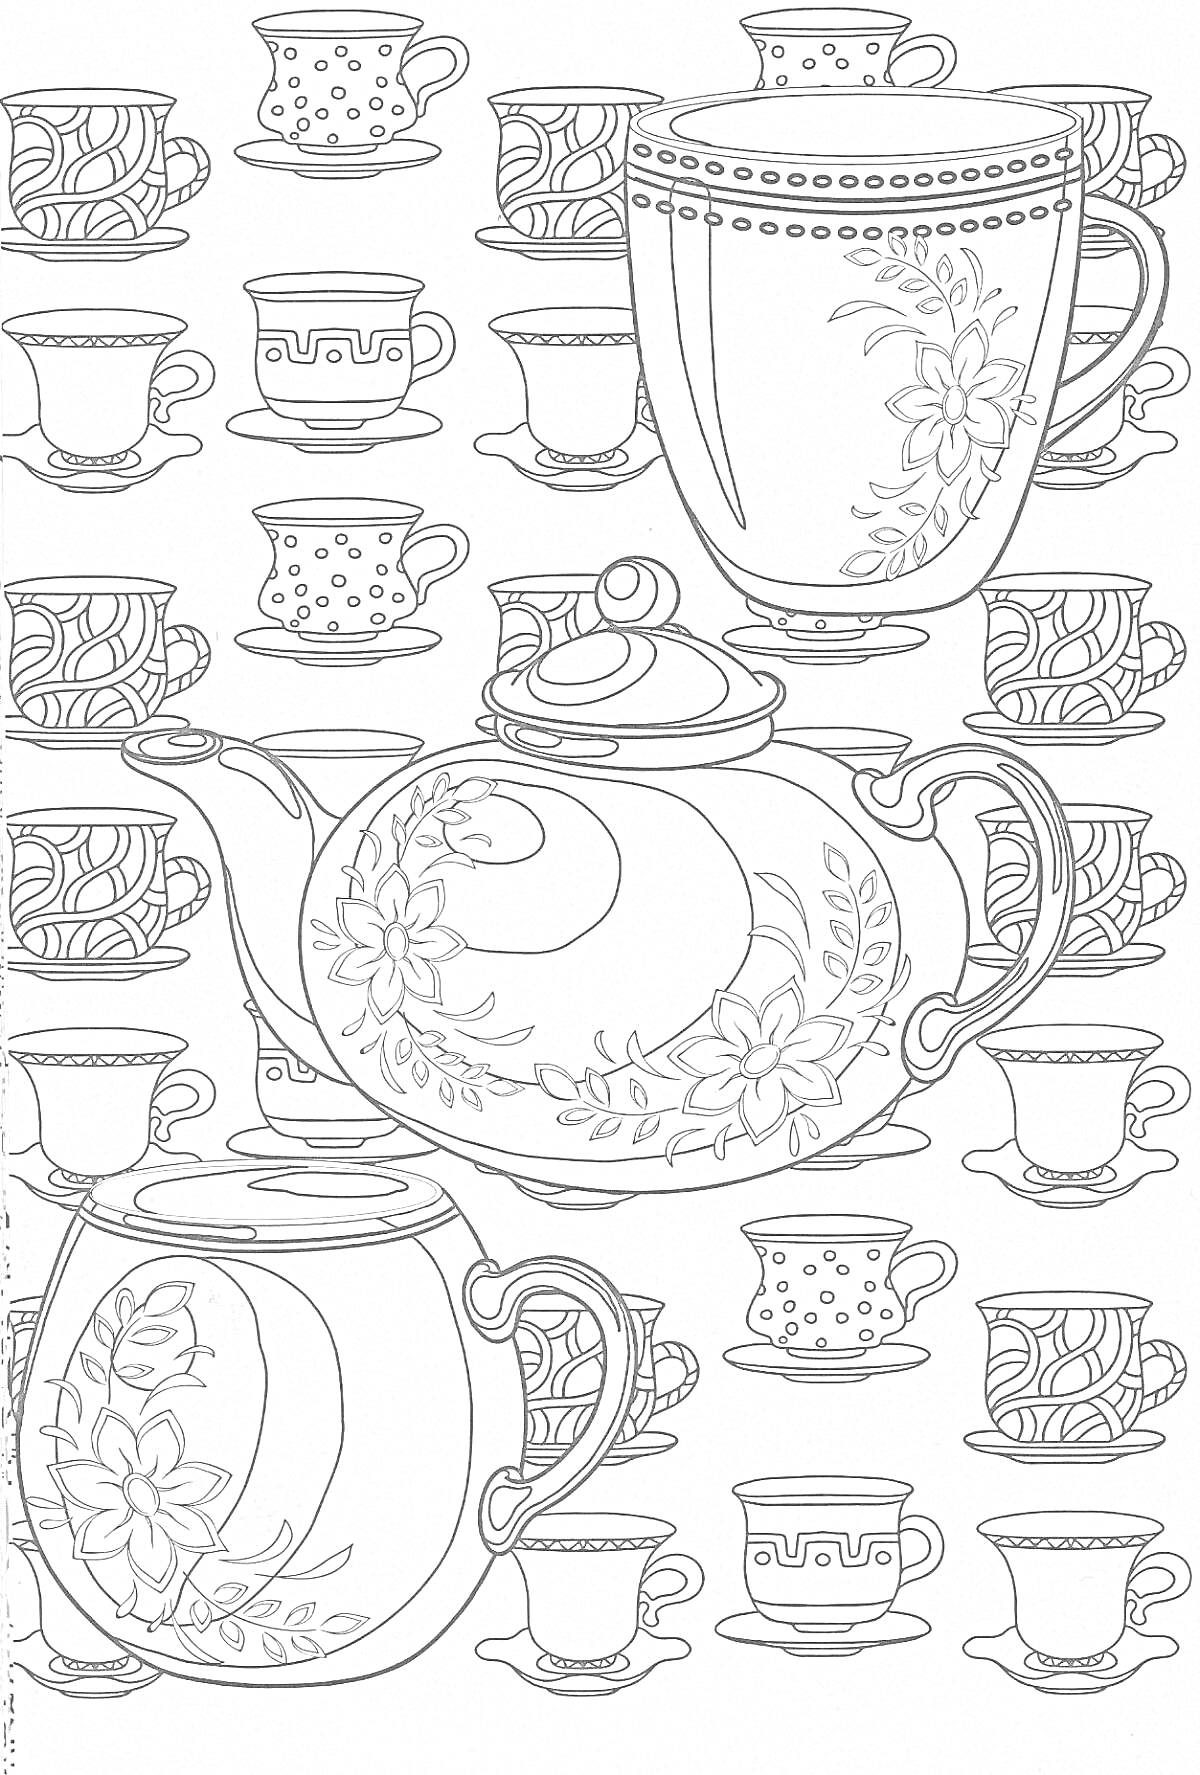 Раскраска Чайный сервиз с чайниками и чашками, украшенными цветочными узорами